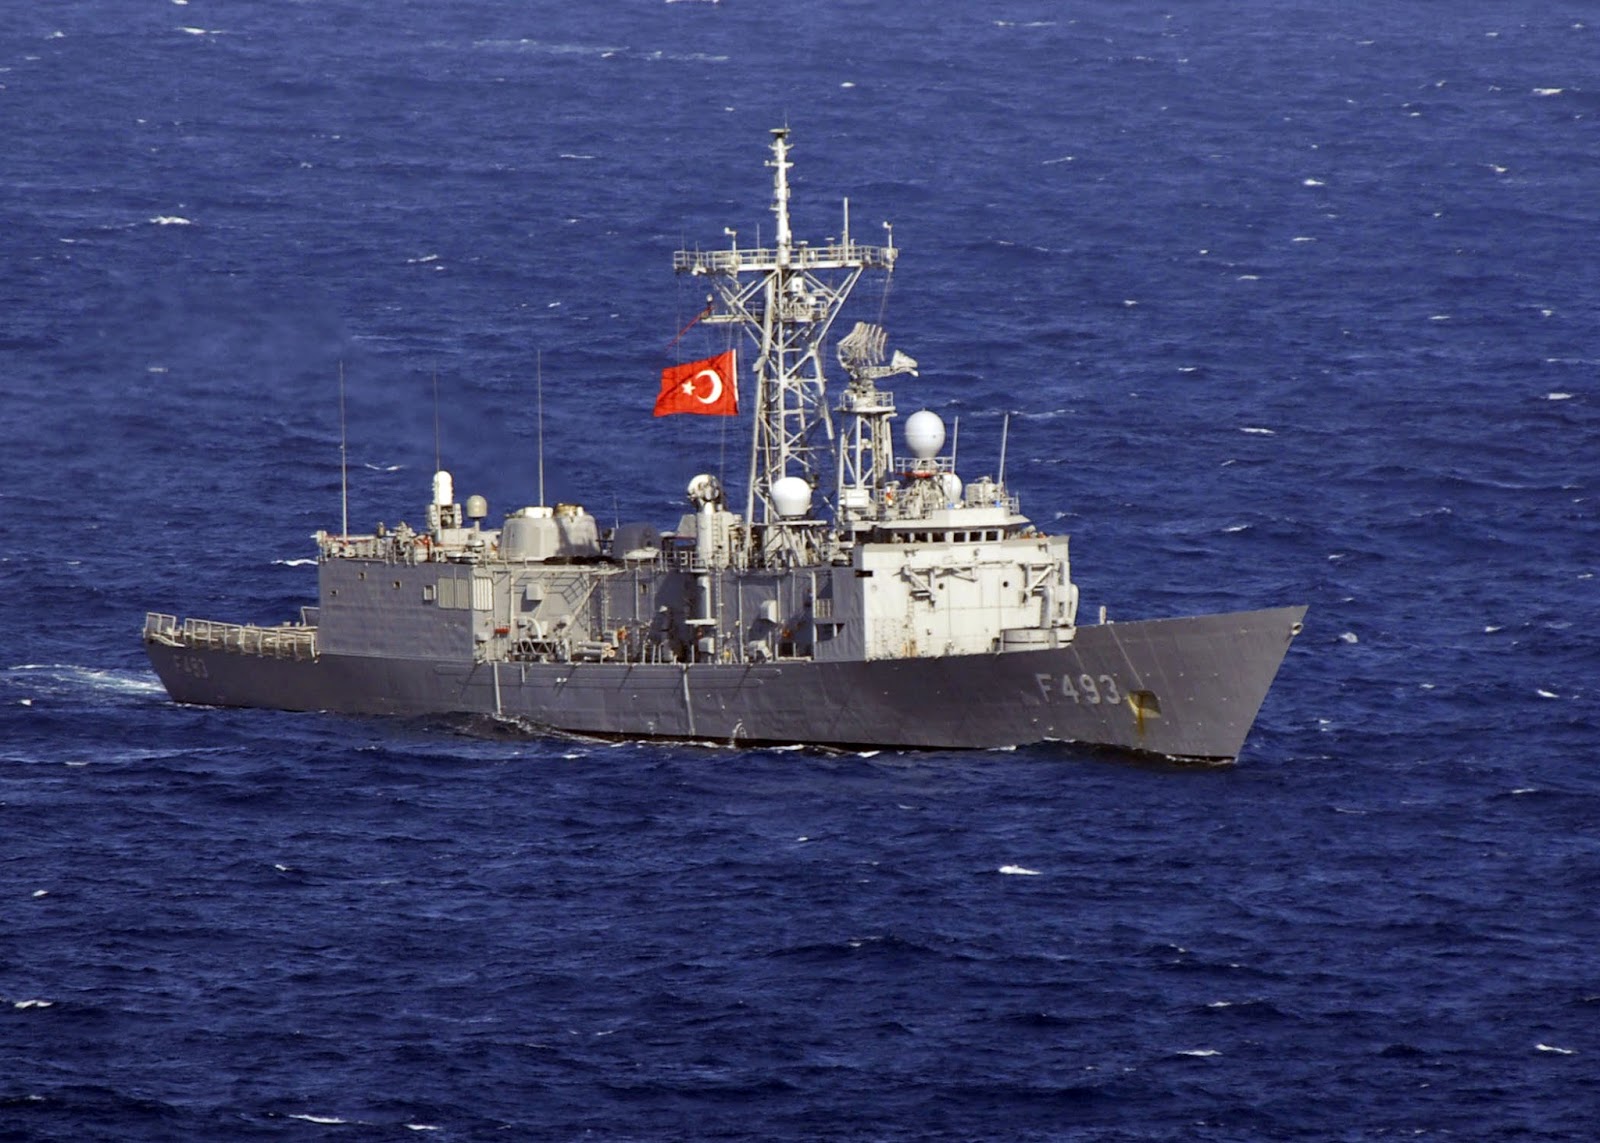 Σκάφος της ελληνικής ακτοφυλακής άνοιξε πυρ κατά τουρκικού εμπορικού πλοίου που αρνήθηκε έλεγχο... Στην περιοχή έσπευσαν τρία τουρκικά πολεμικά... - Φωτογραφία 3